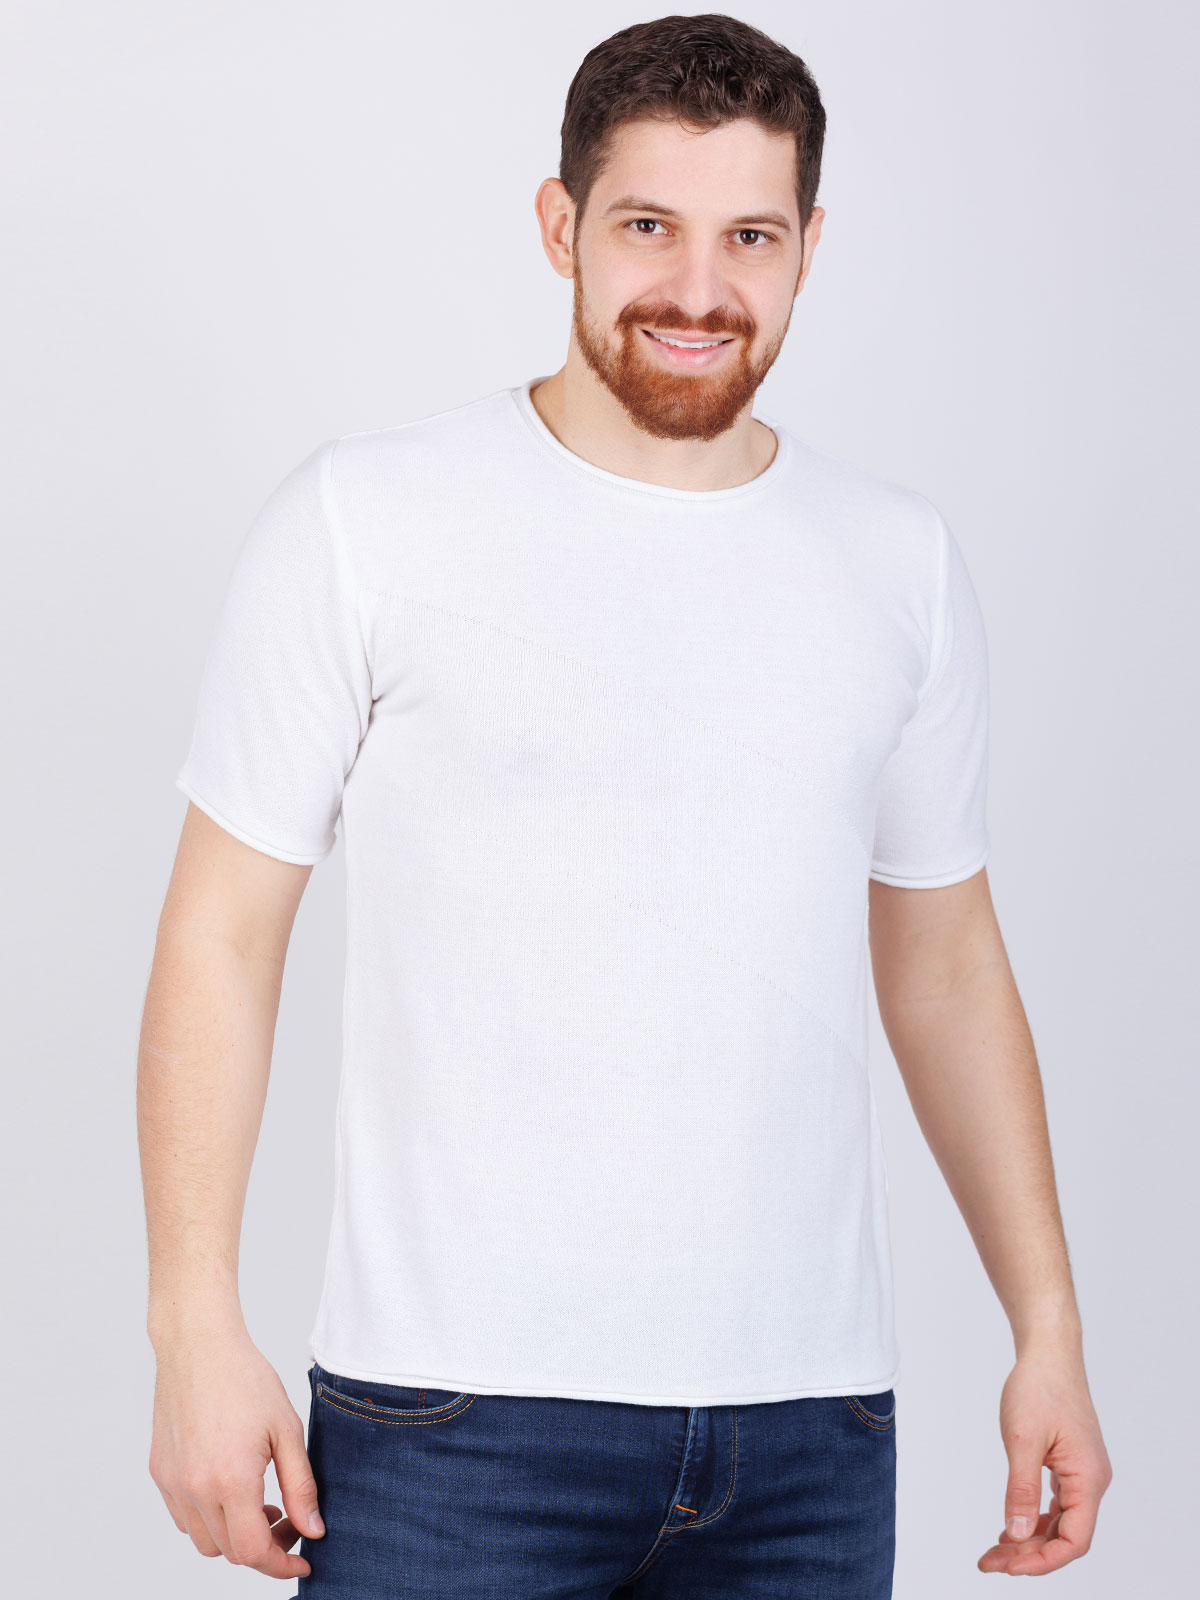 Tshirt πλεκτό  λευκό - 86008 € 6.75 img3